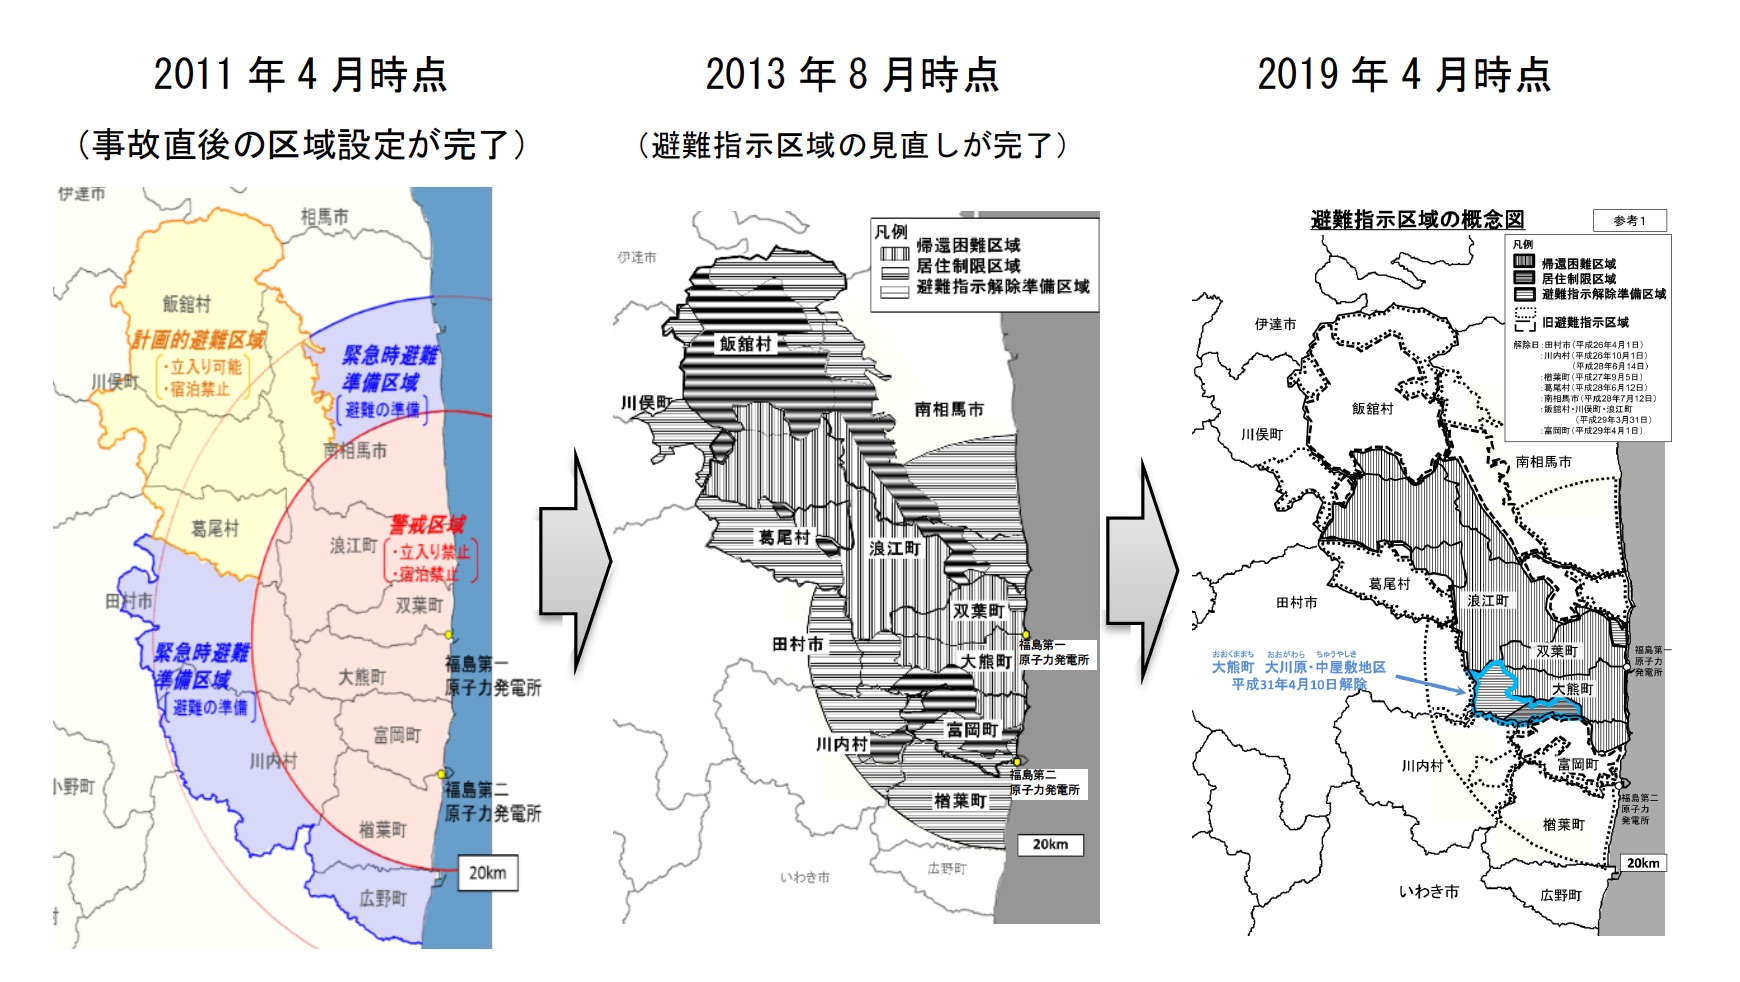 図1-2　避難指示区域の変遷（2011年4月から2019年4月まで）